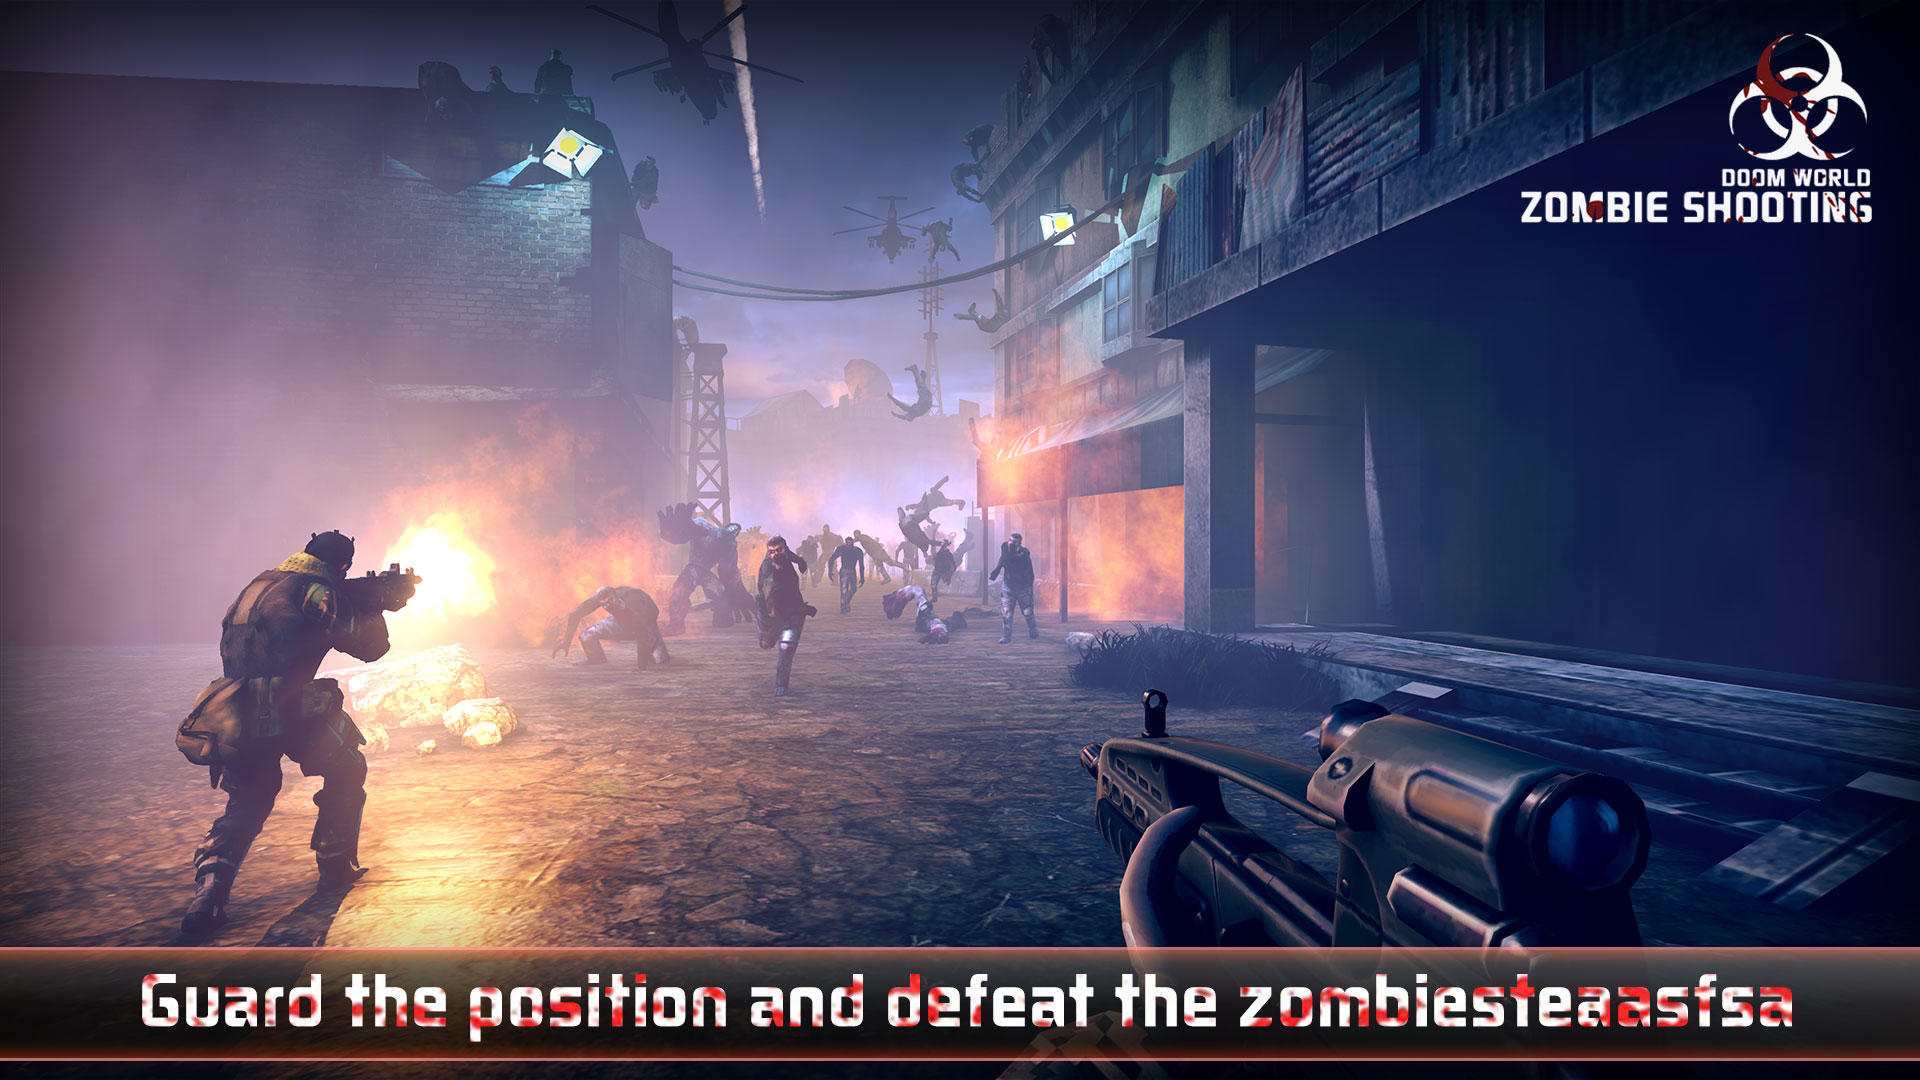 Screenshot 1 of Zombie ကာကွယ်ရေးပစ်ခတ်မှု- အမဲလိုက်ခြင်း။ 2.8.0